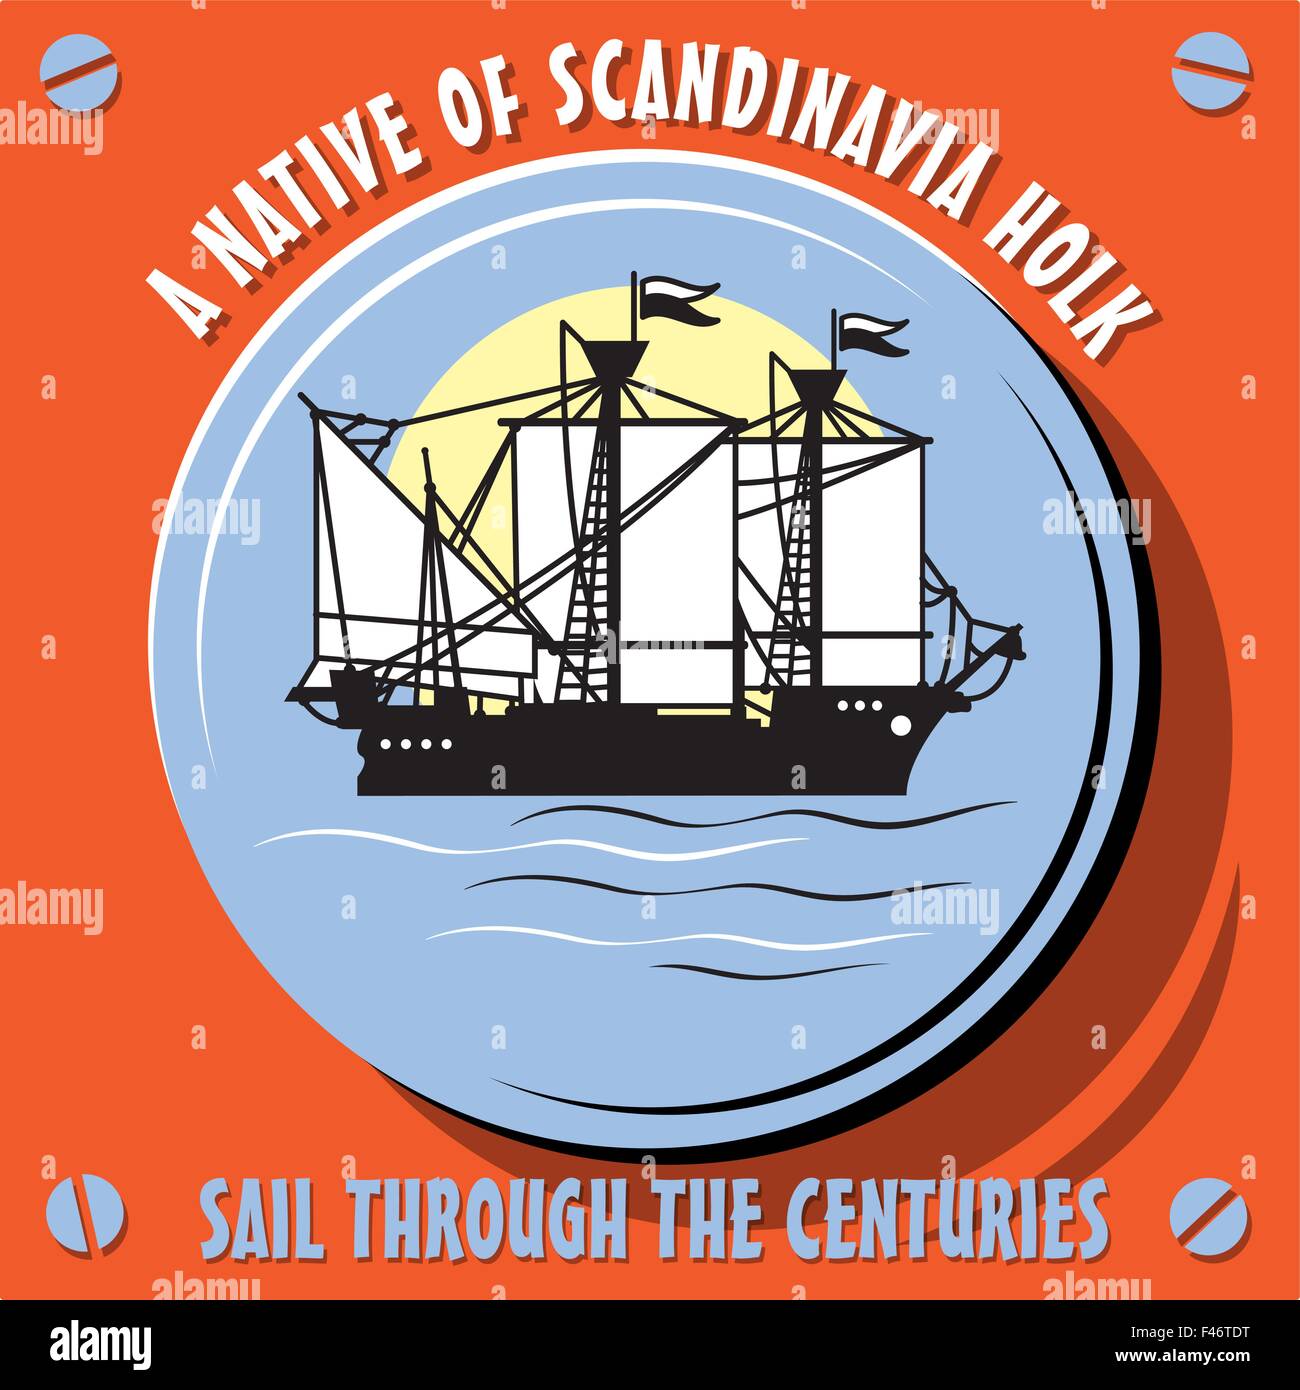 Segeln Sie durch die Jahrhunderte. Segelboot Schiff ein Eingeborener von Scandinavia Holk. Vektor-illustration Stock Vektor